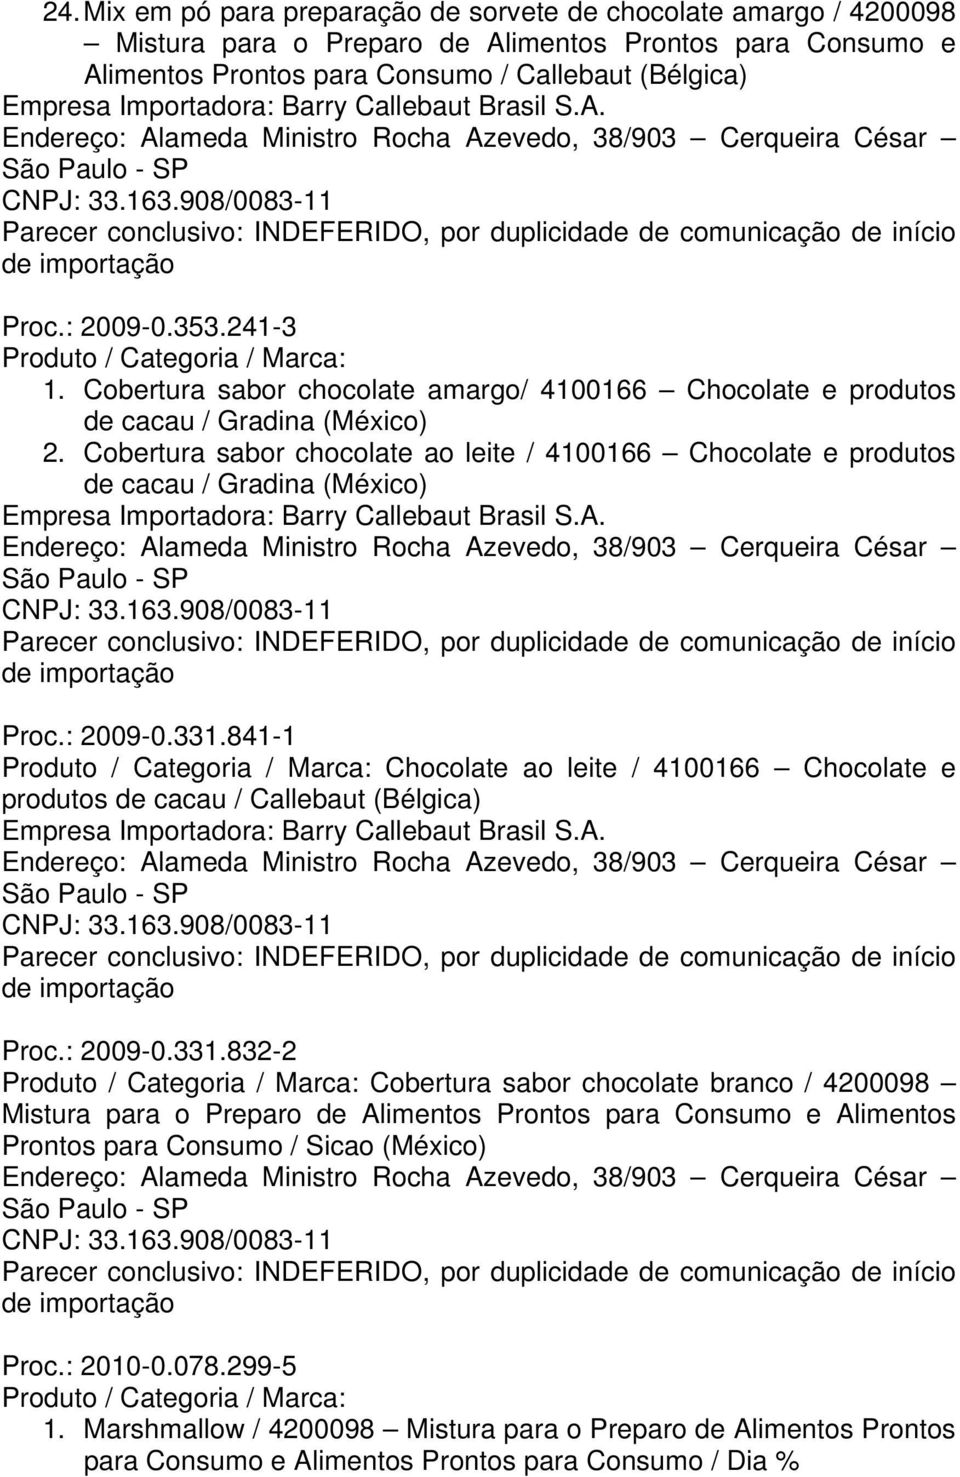 841-1 Chocolate ao leite / 4100166 Chocolate e produtos de cacau / Proc.: 2009-0.331.